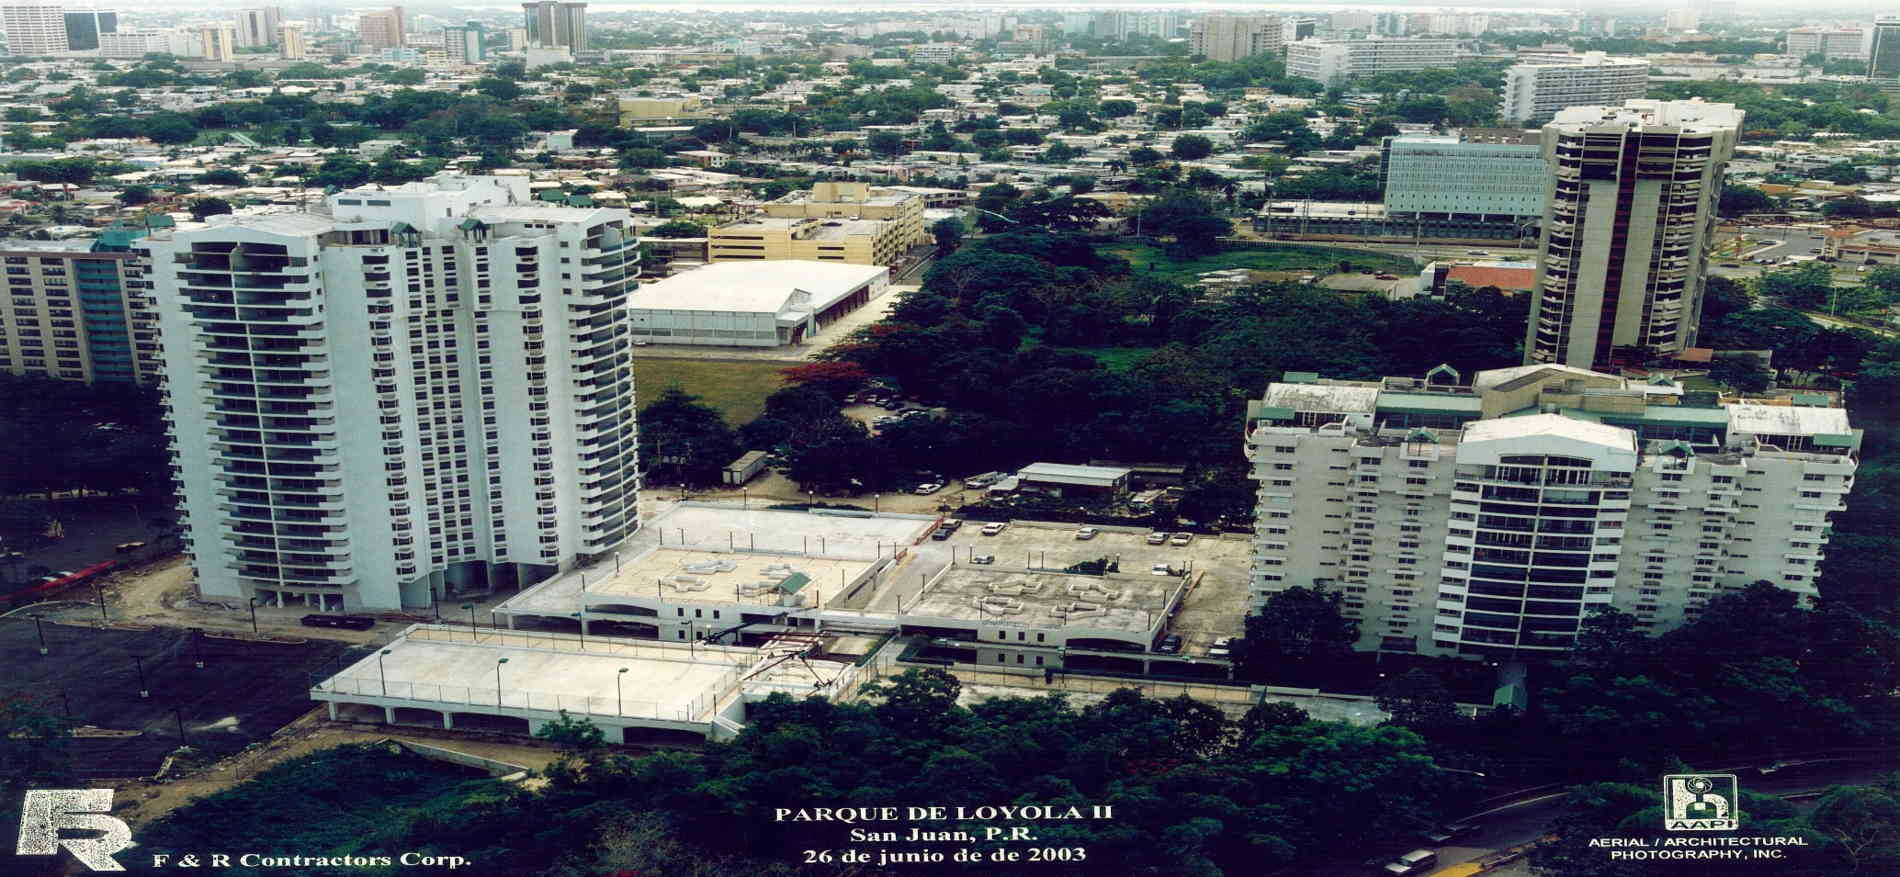 Parque de Loyola Tower II Hato Rey Puerto Rico F&R Construction Company